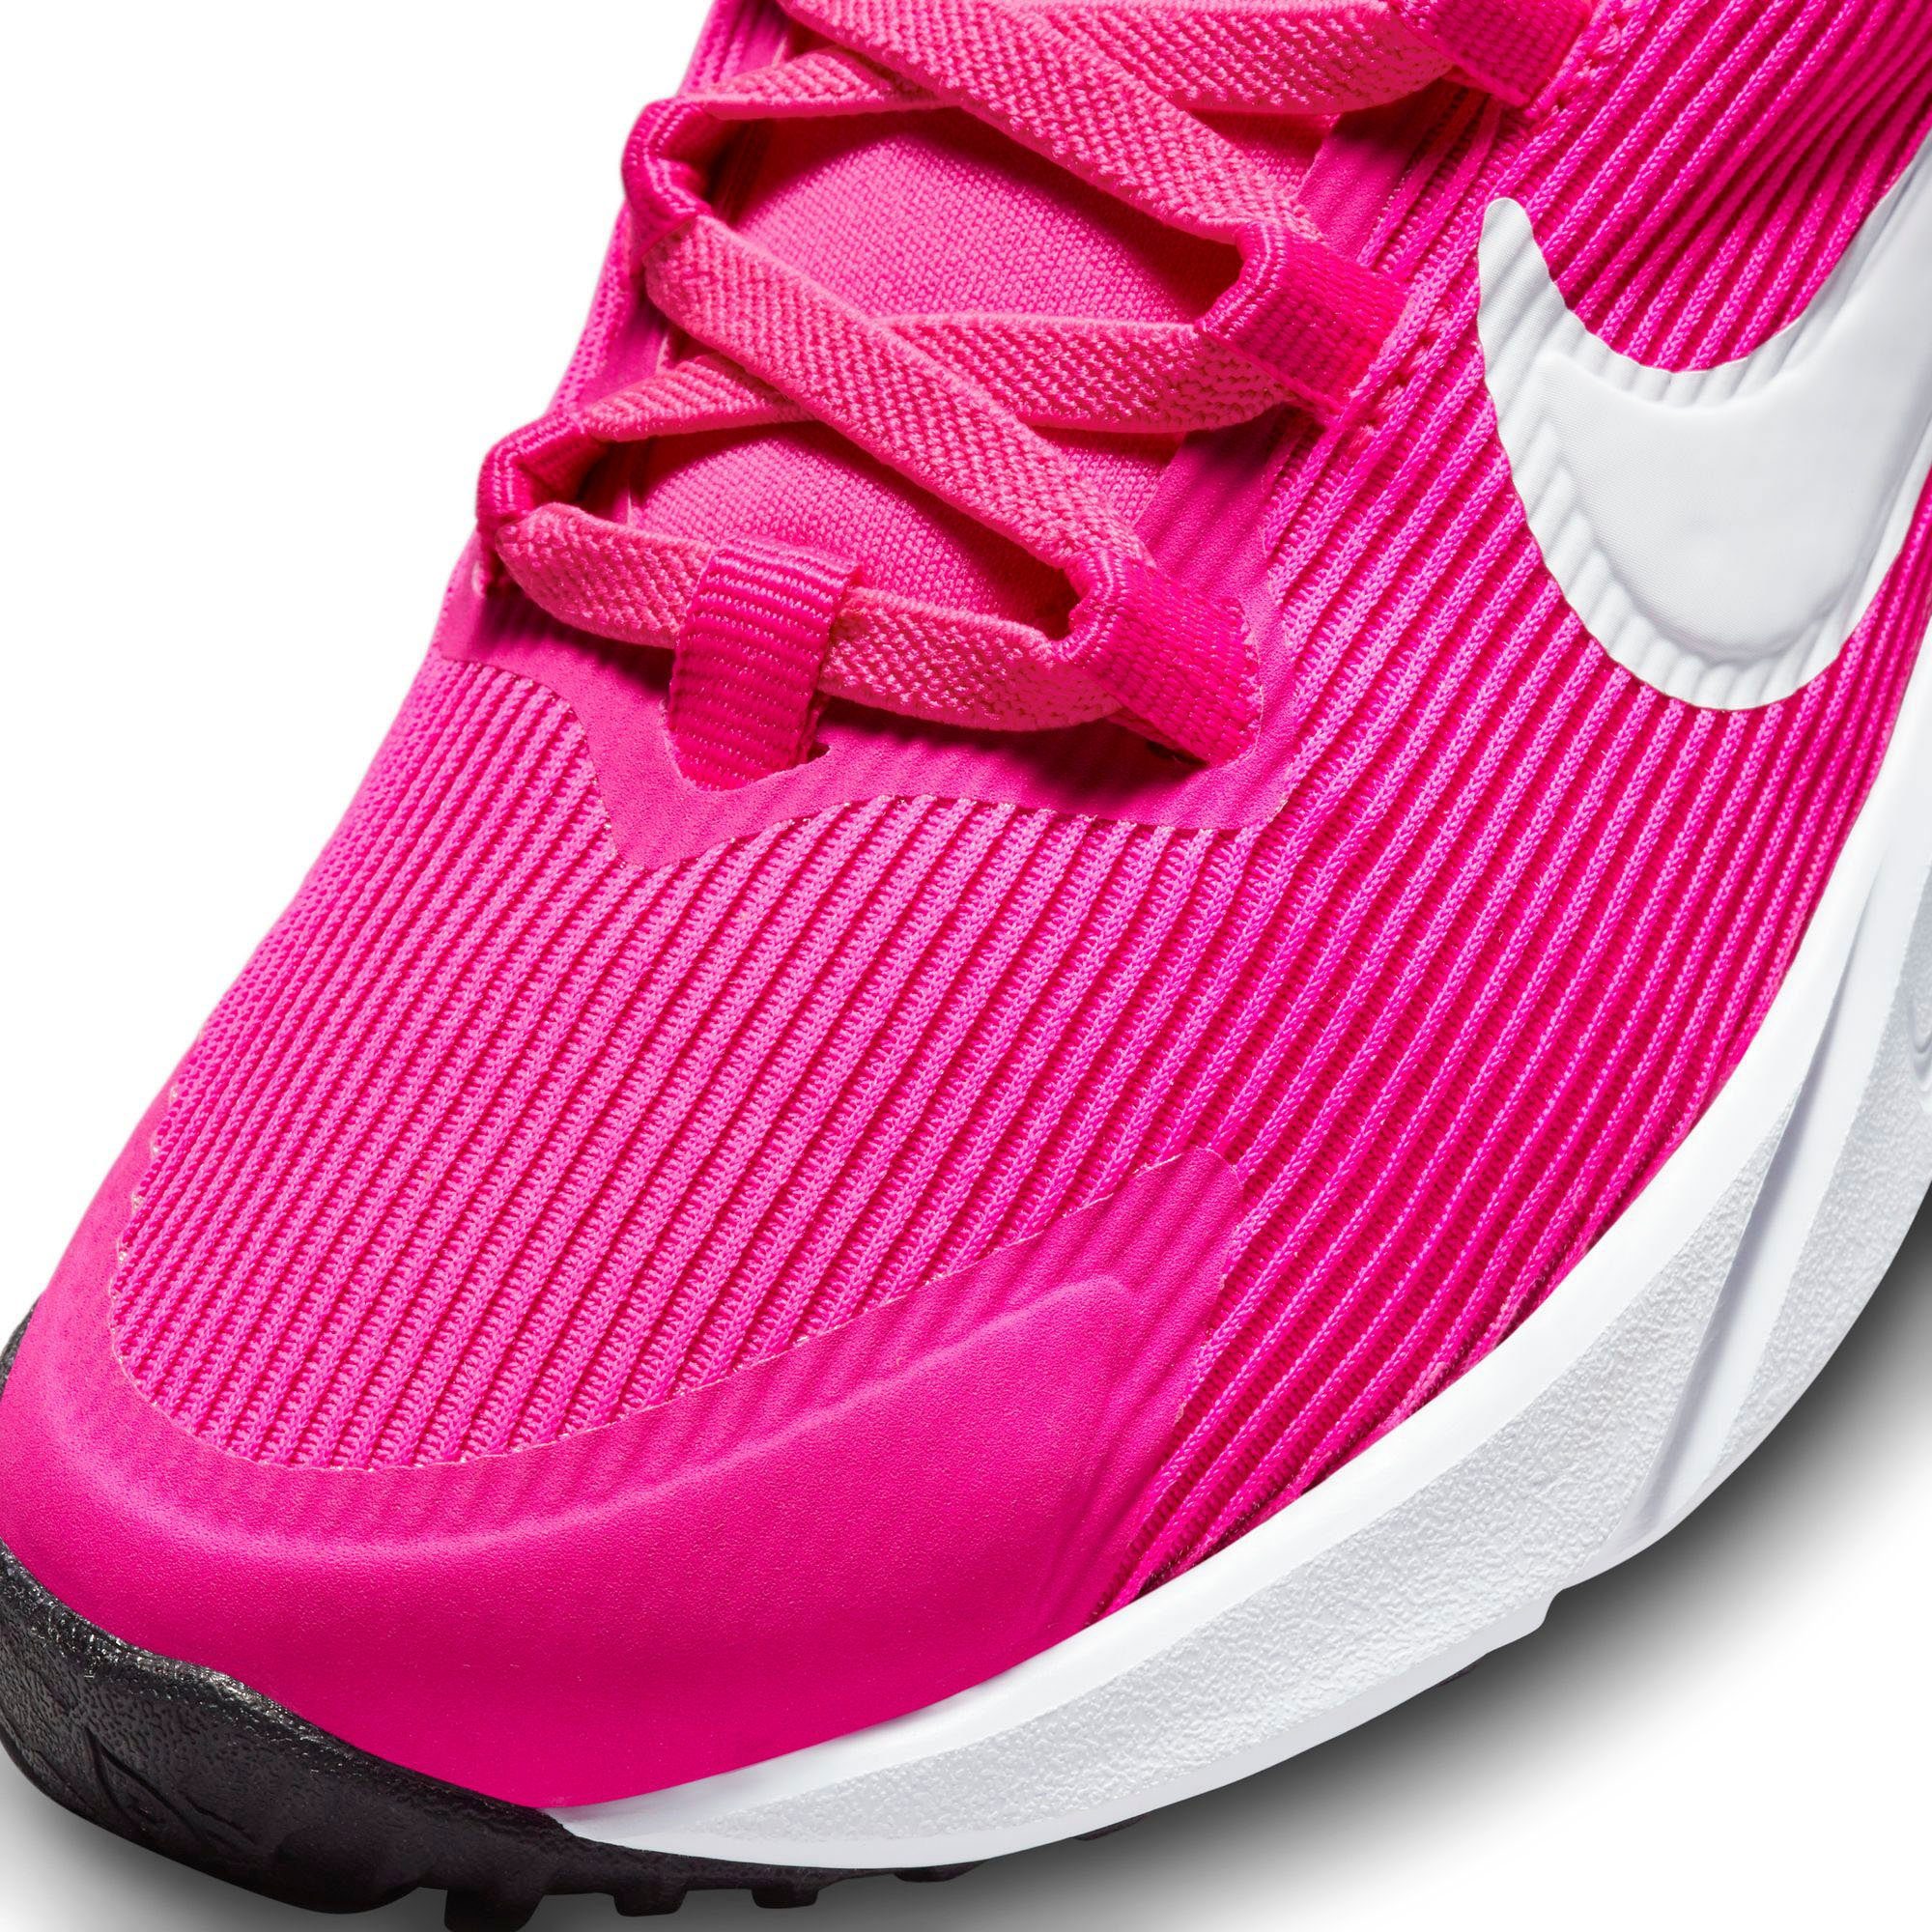 STAR Nike (PS) 4 Laufschuh pink RUNNER